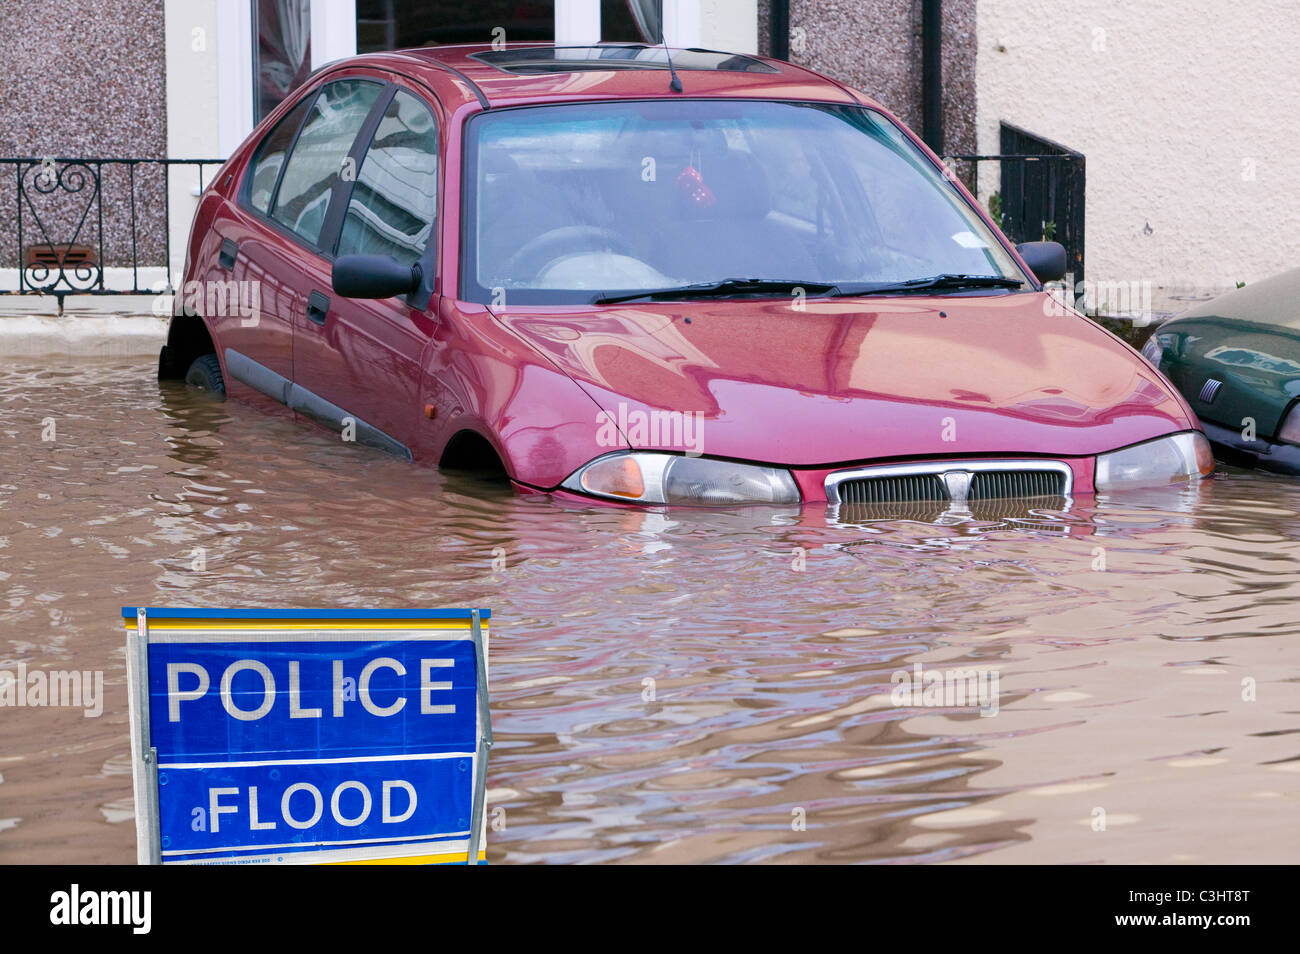 Flooding in Carlisle, UK. Stock Photo